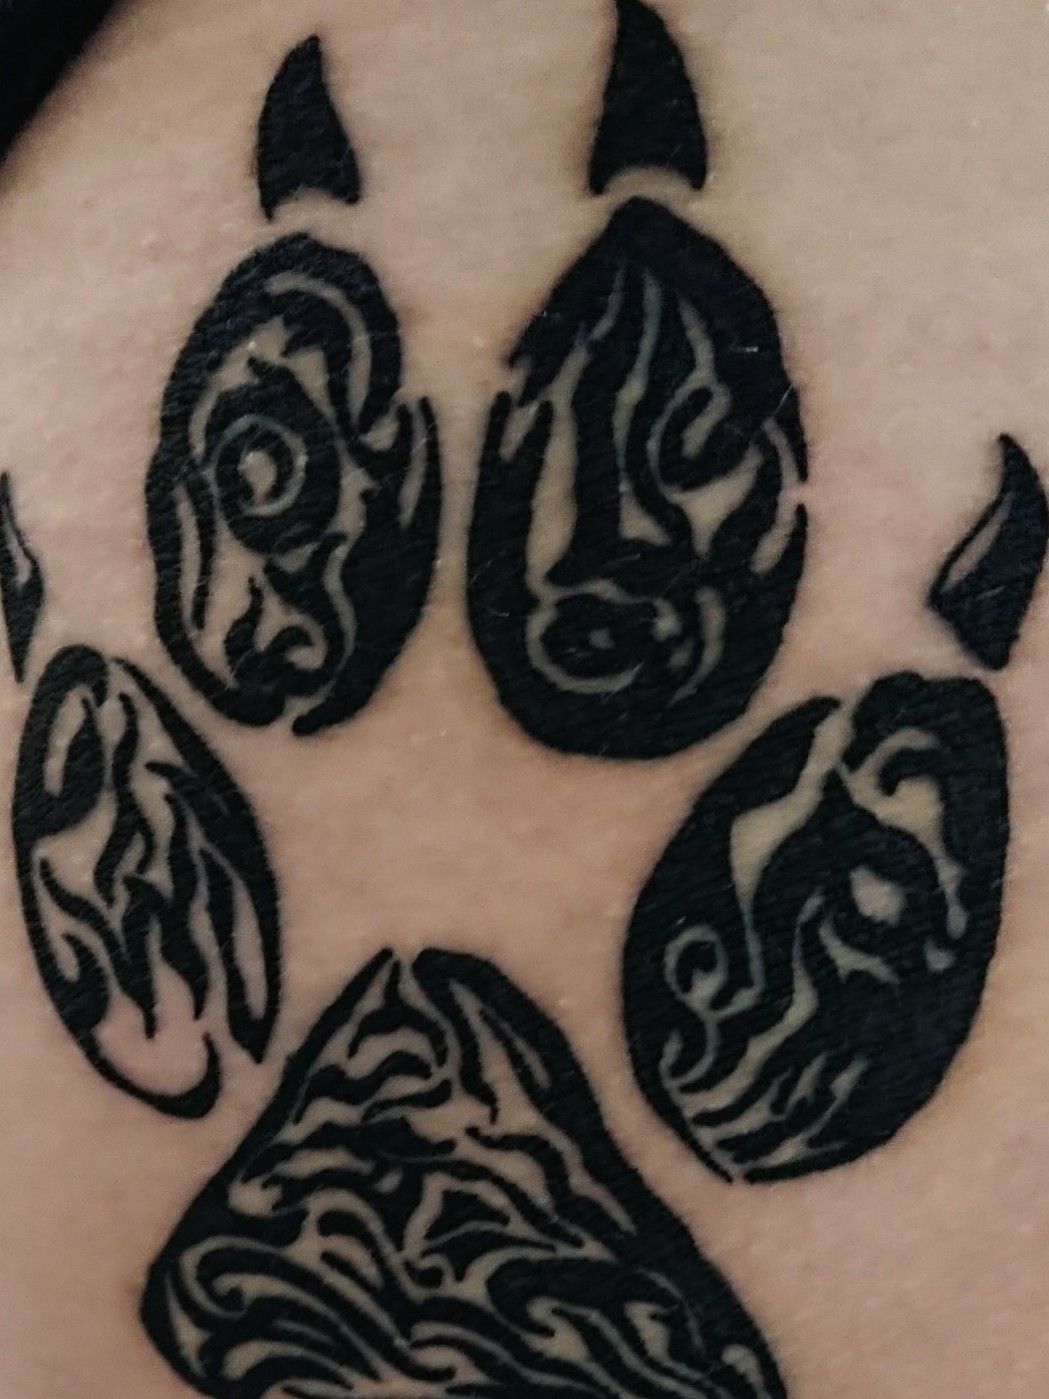 10 Best Tiger Paw Print Tattoo Designs Ideas  PetPress  Neck tattoo  Full sleeve tattoos Bird tattoo neck